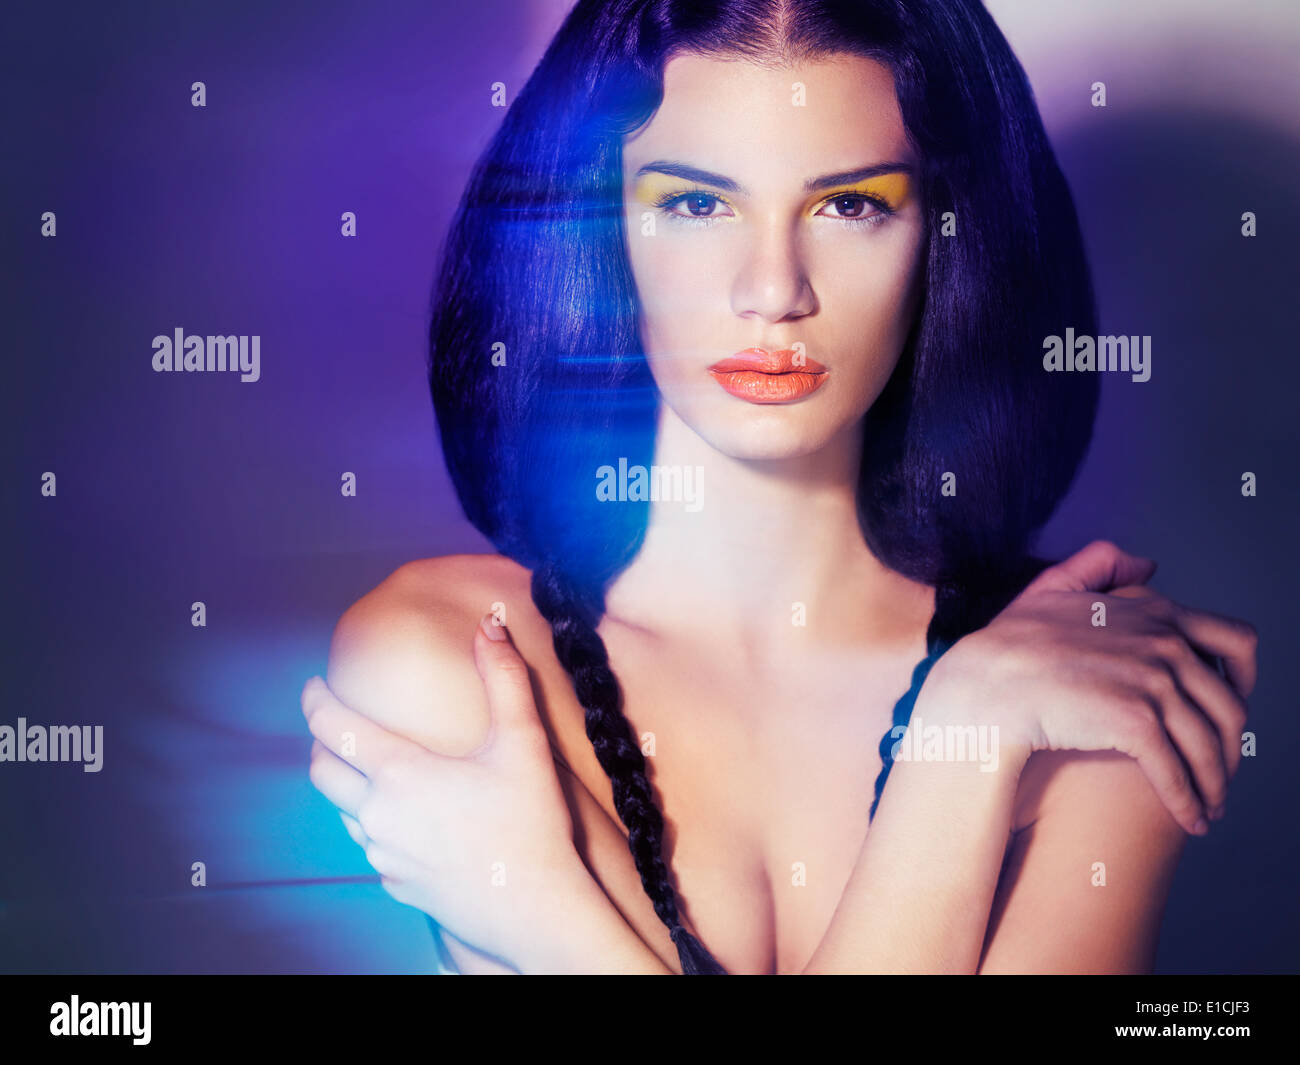 Führerschein und Fingerabdrücke auf MaximImages.com - künstlerisches, mysteriöses Schönheitsporträt einer jungen, wunderschönen Frau mit blauem Bewegungsunschärfe Stockfoto